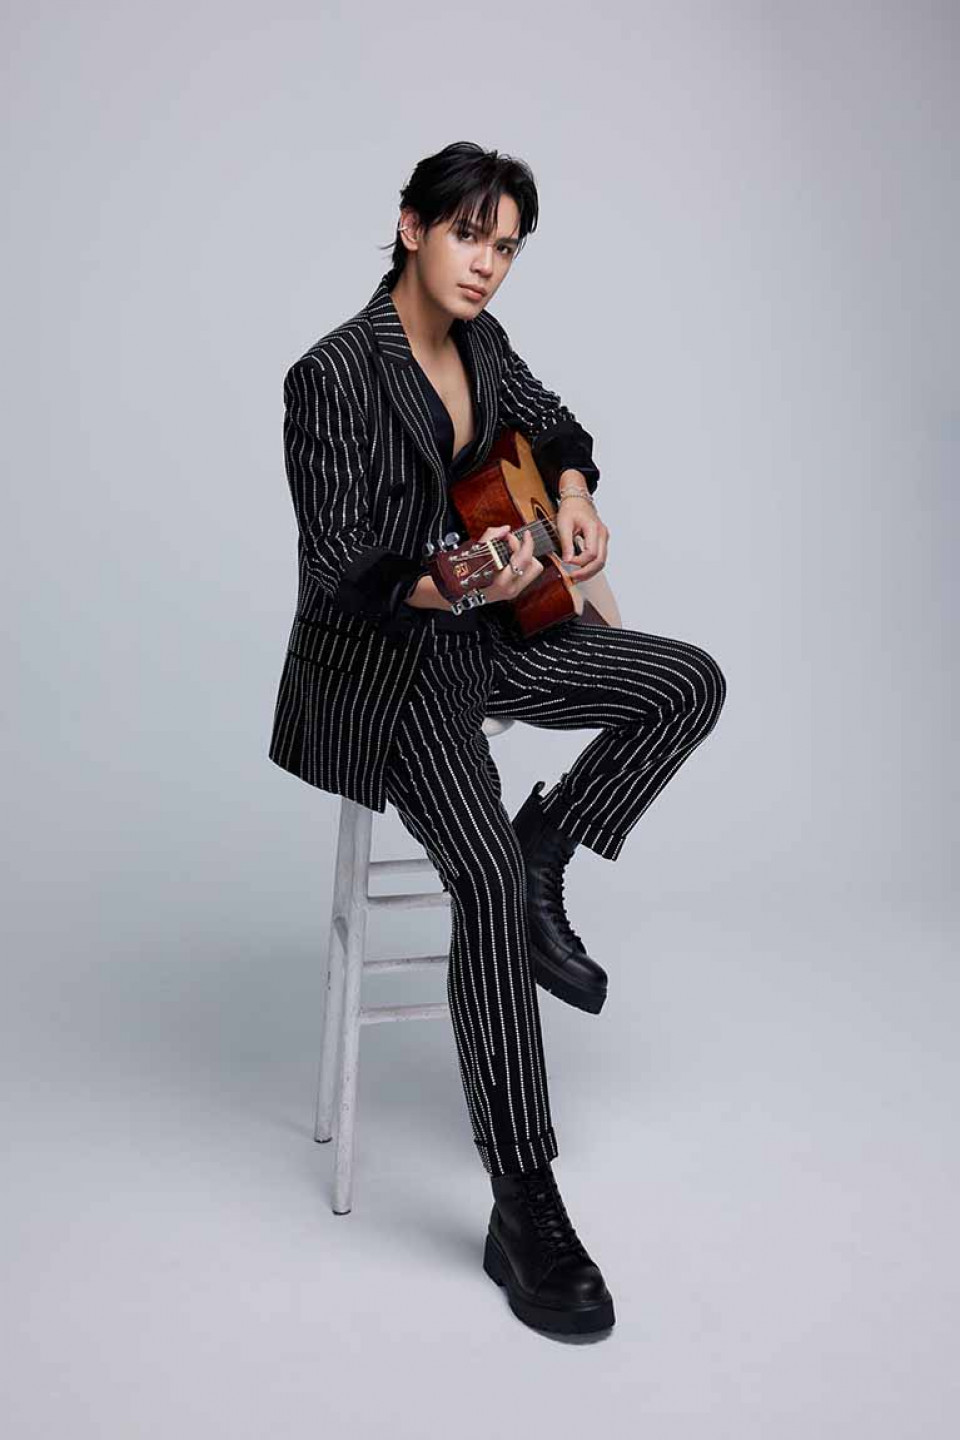 陳零九拿著心愛的木吉他一起入鏡拍攝全新宣傳照(照片提供_種子音樂)